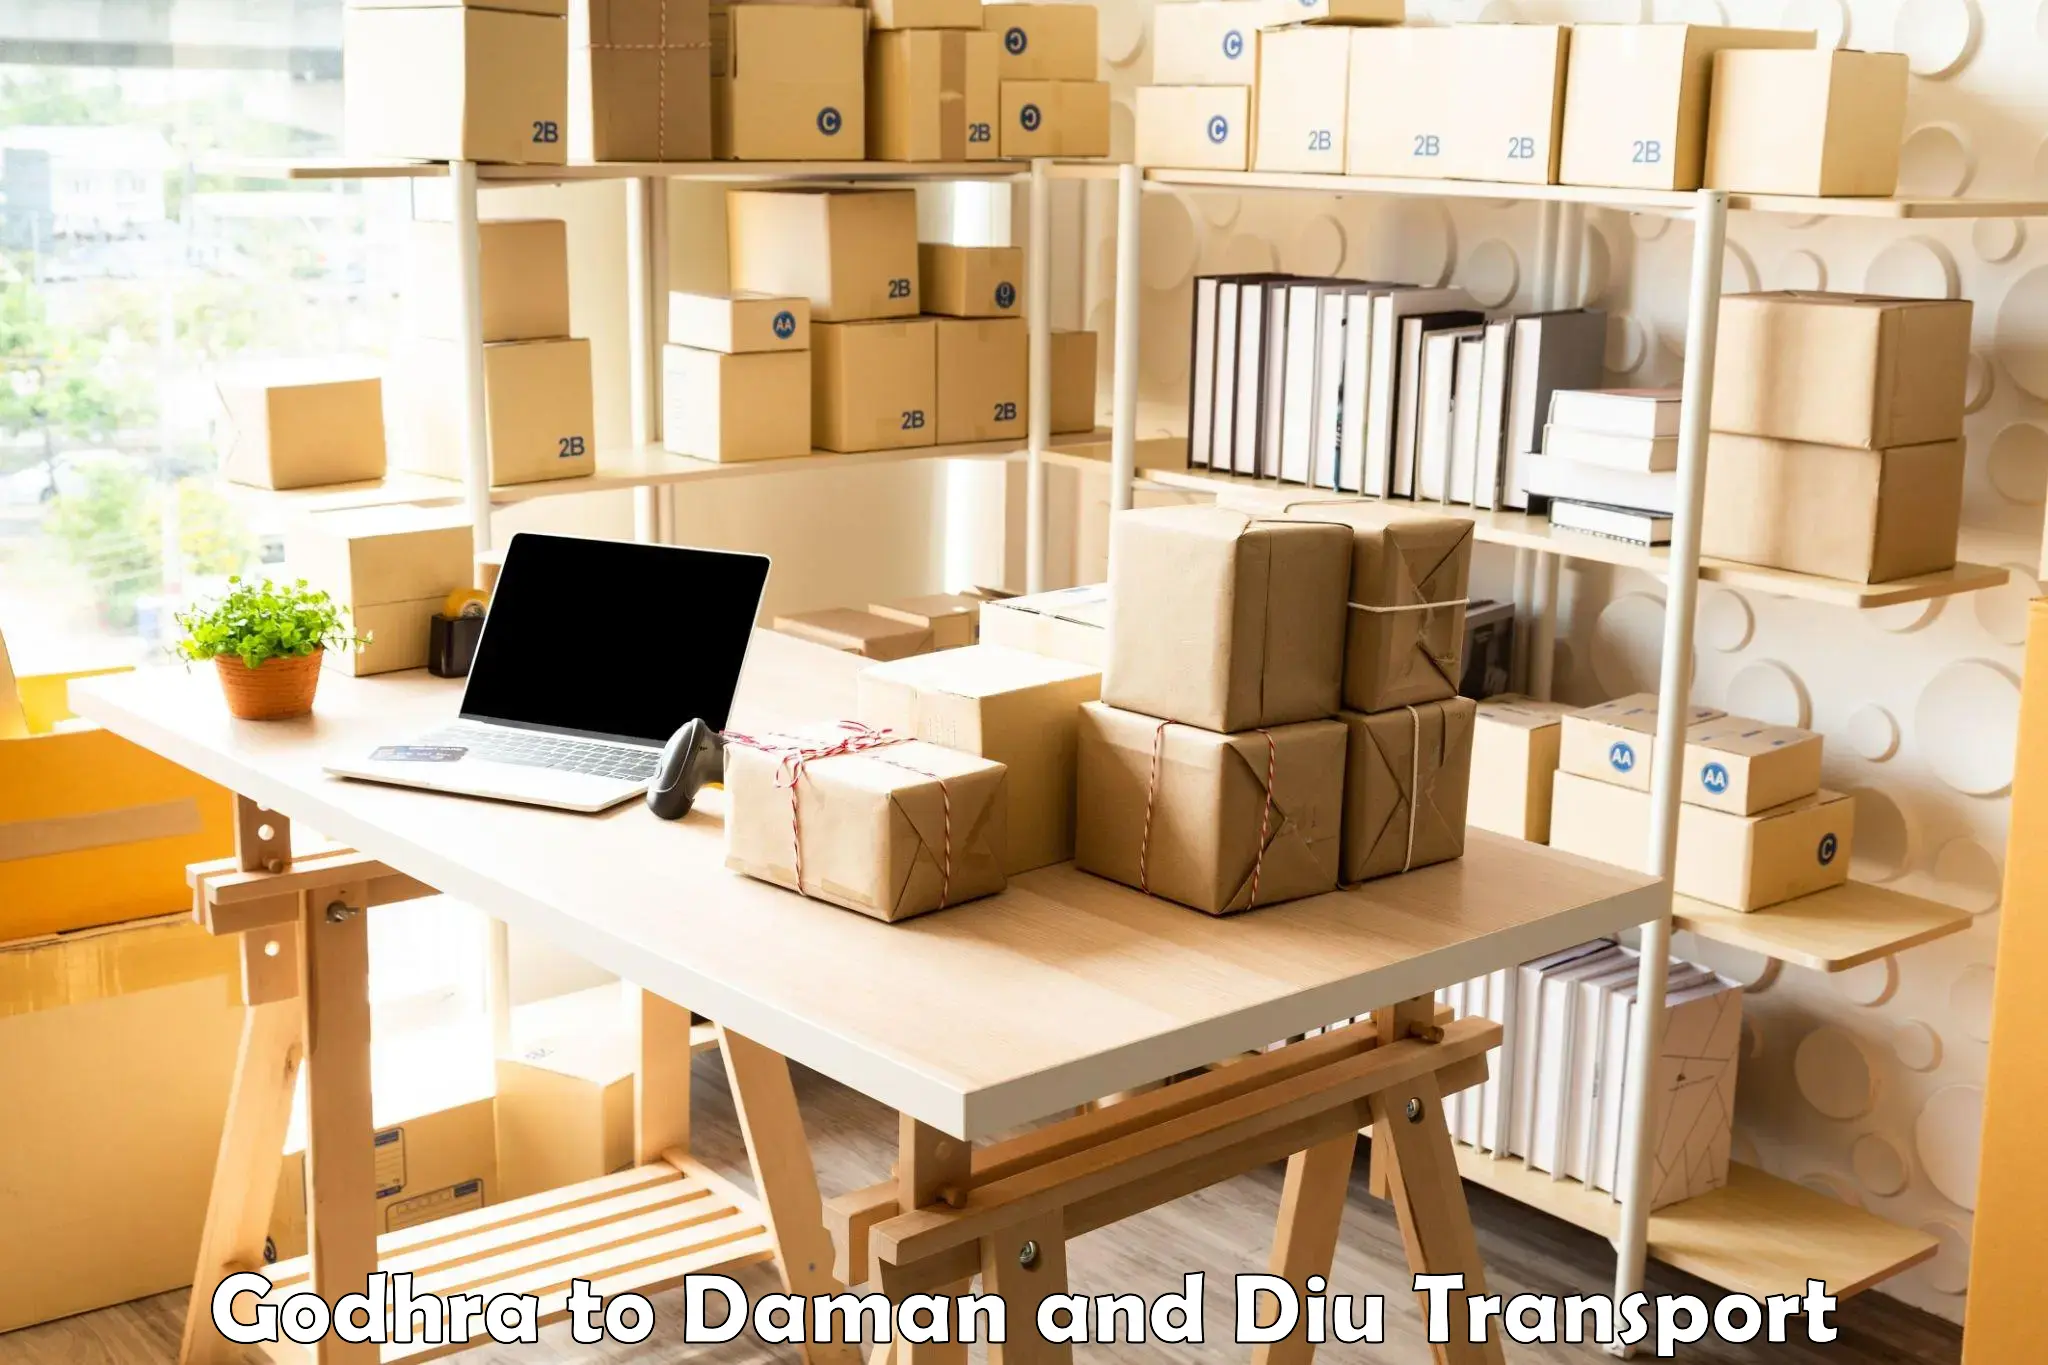 Logistics transportation services Godhra to Daman and Diu